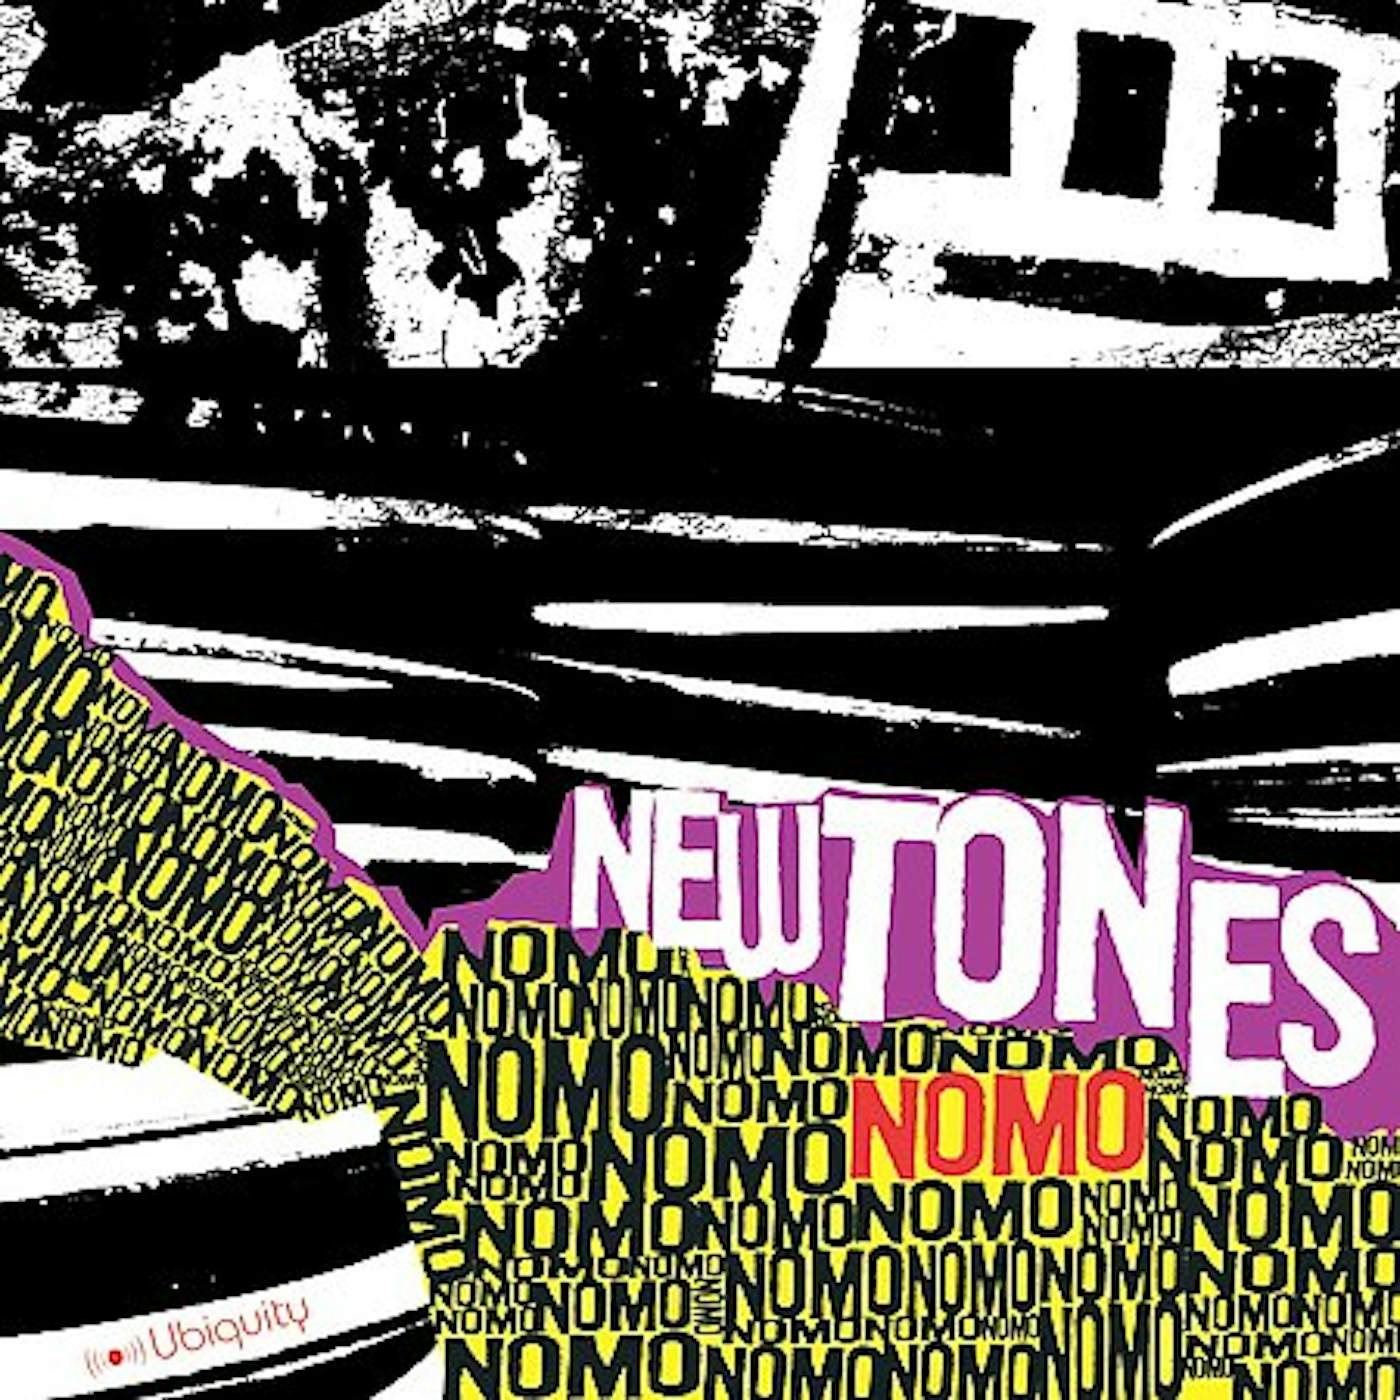 Nomo New Tones Vinyl Record